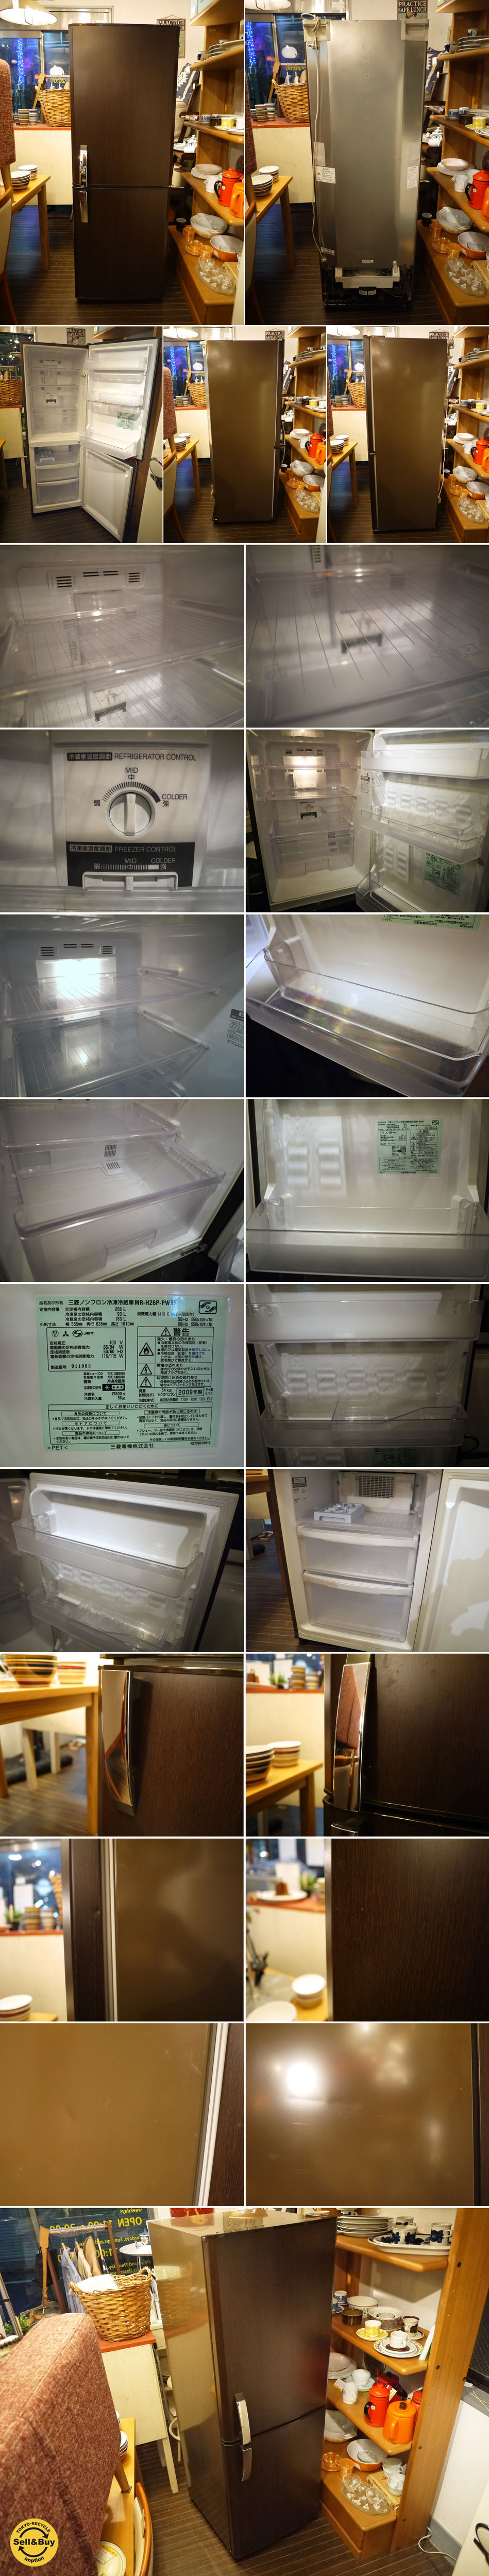 三菱ノンフロン冷凍冷蔵庫 プレミアムウッド MR-H26P-PW 256L 木目調 